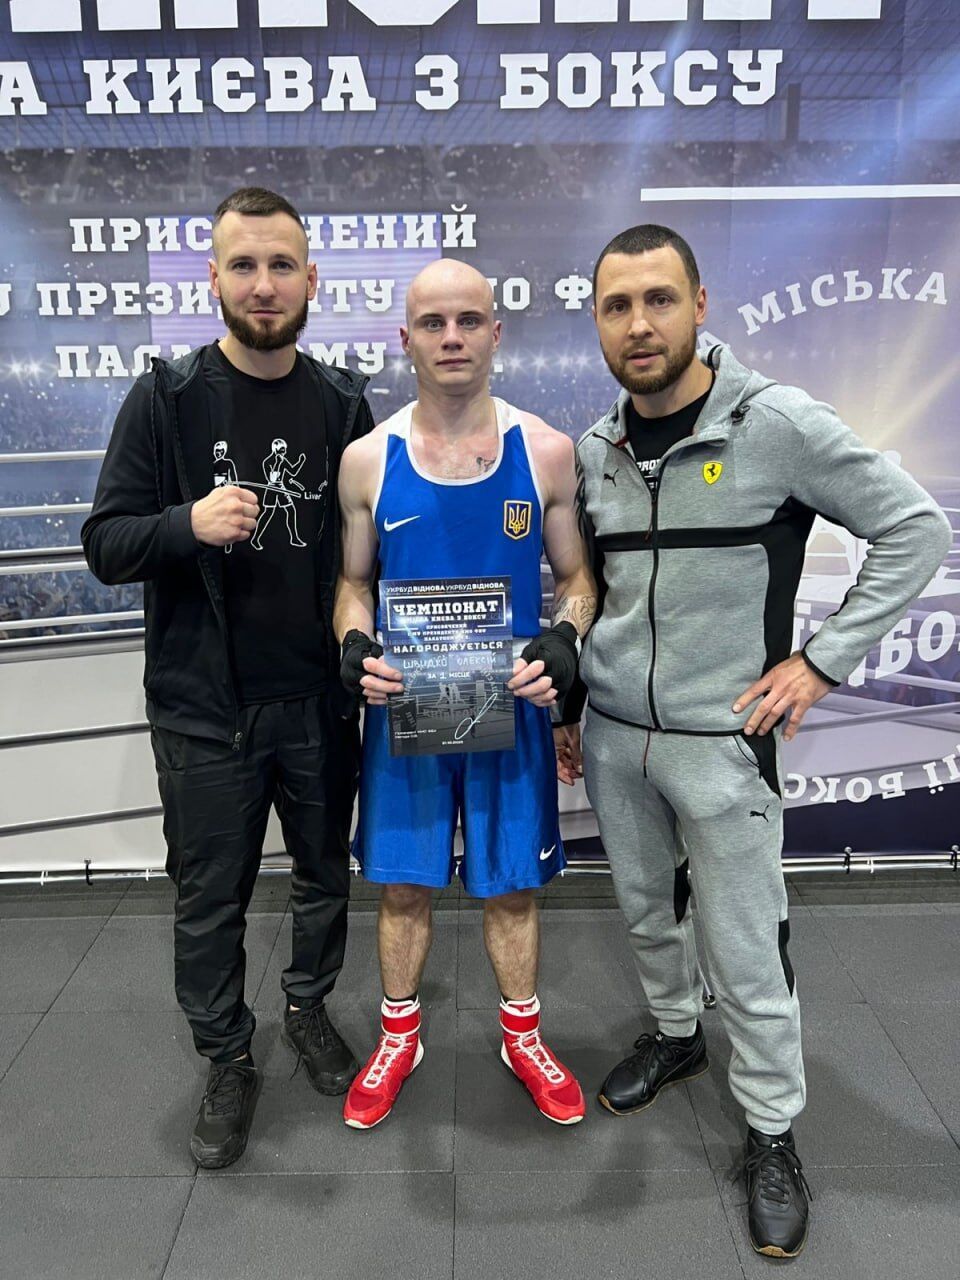 Боксер Олексій Швидко, який зайняв 1 місце в 2 групі у фіналі чемпіонату Києва з боксу